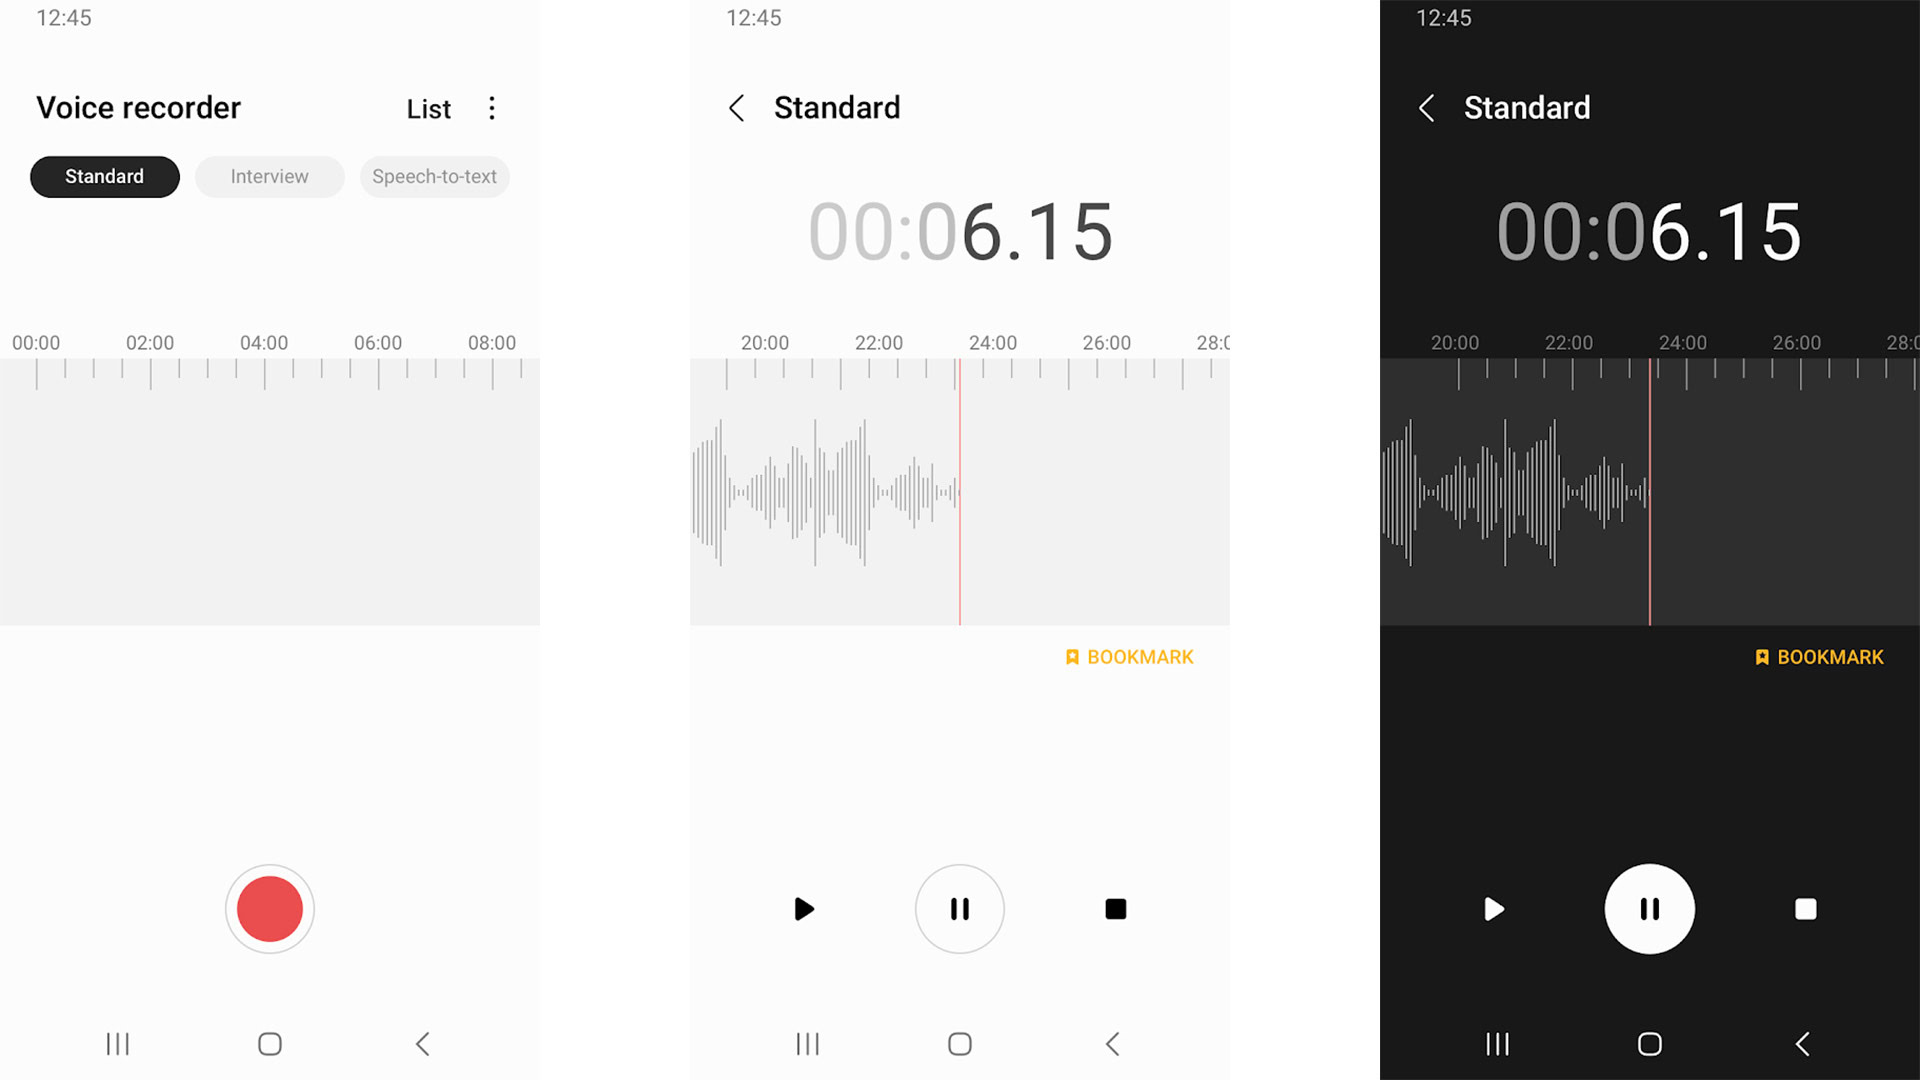 Samsung Voice Recorder screenshot 2022